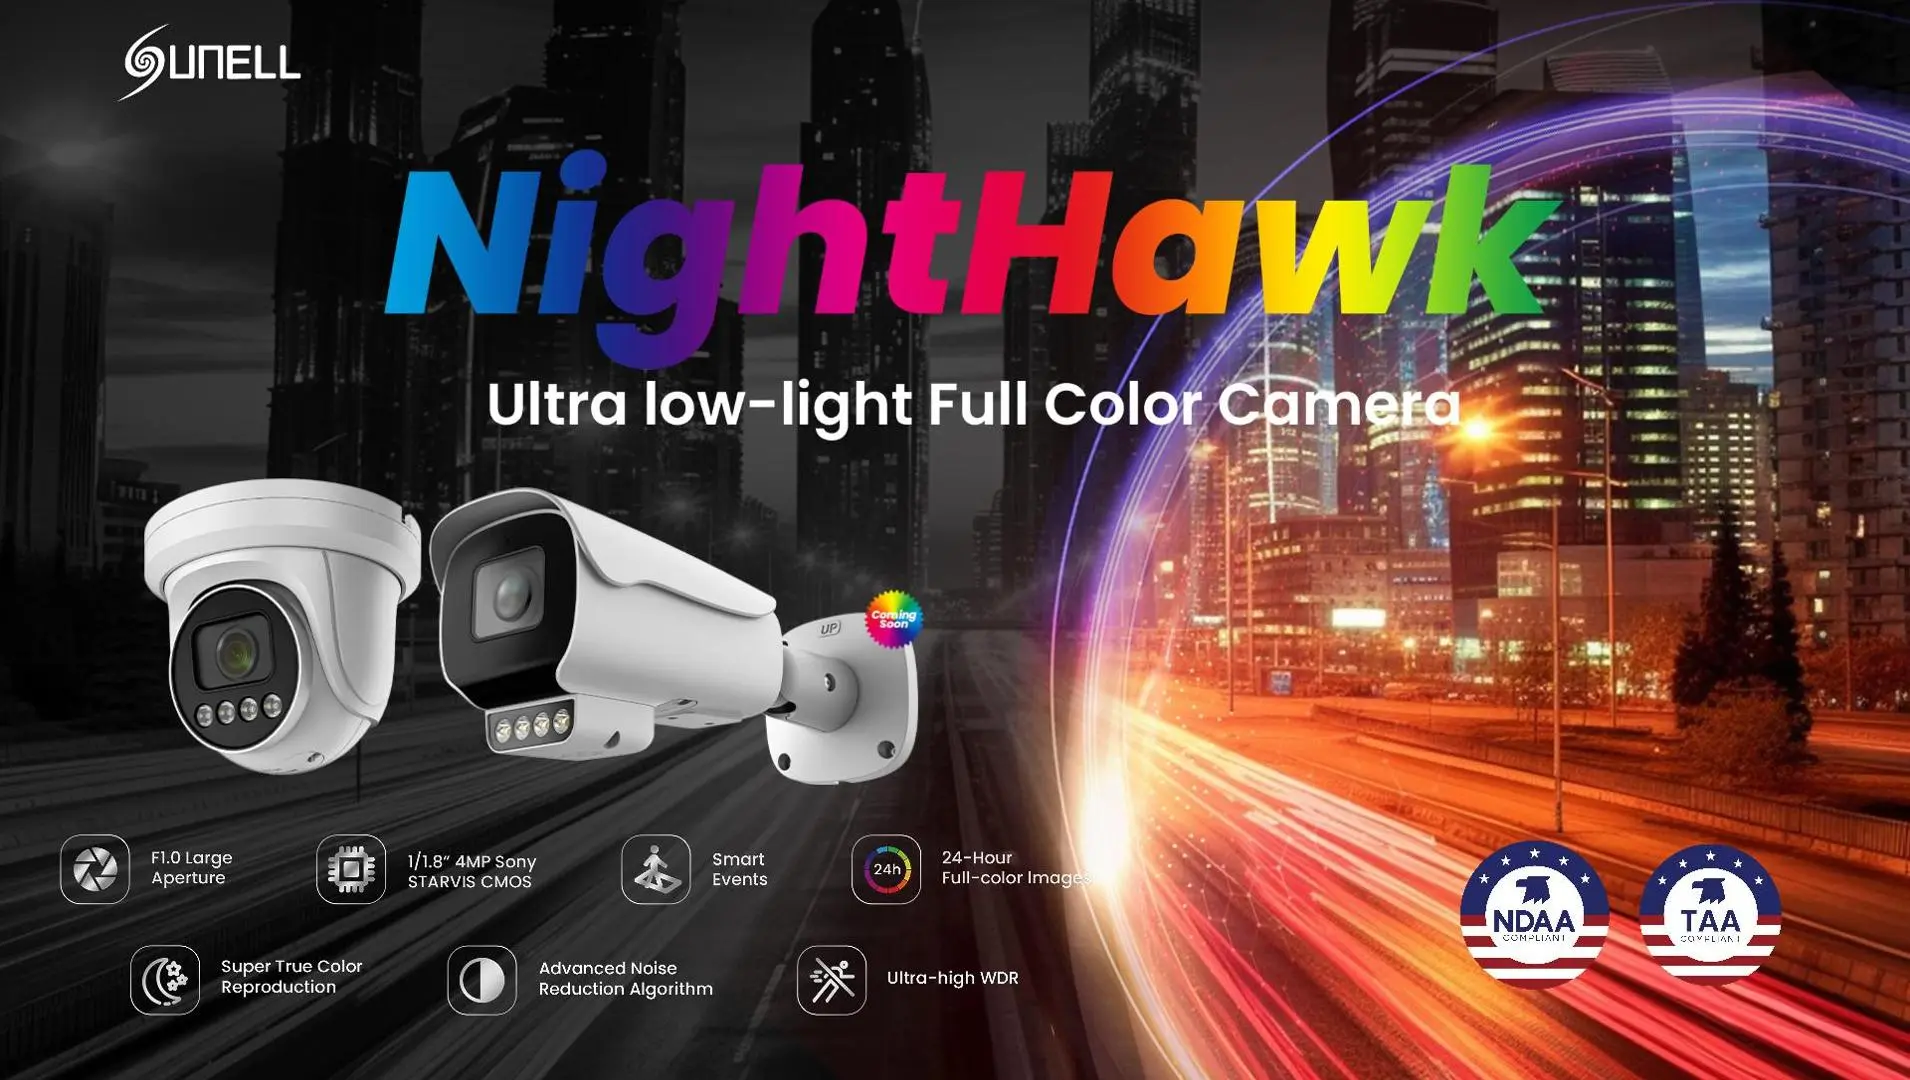 Caméra couleur intelligente à ultra-faible luminosité Sunell Nighthawk